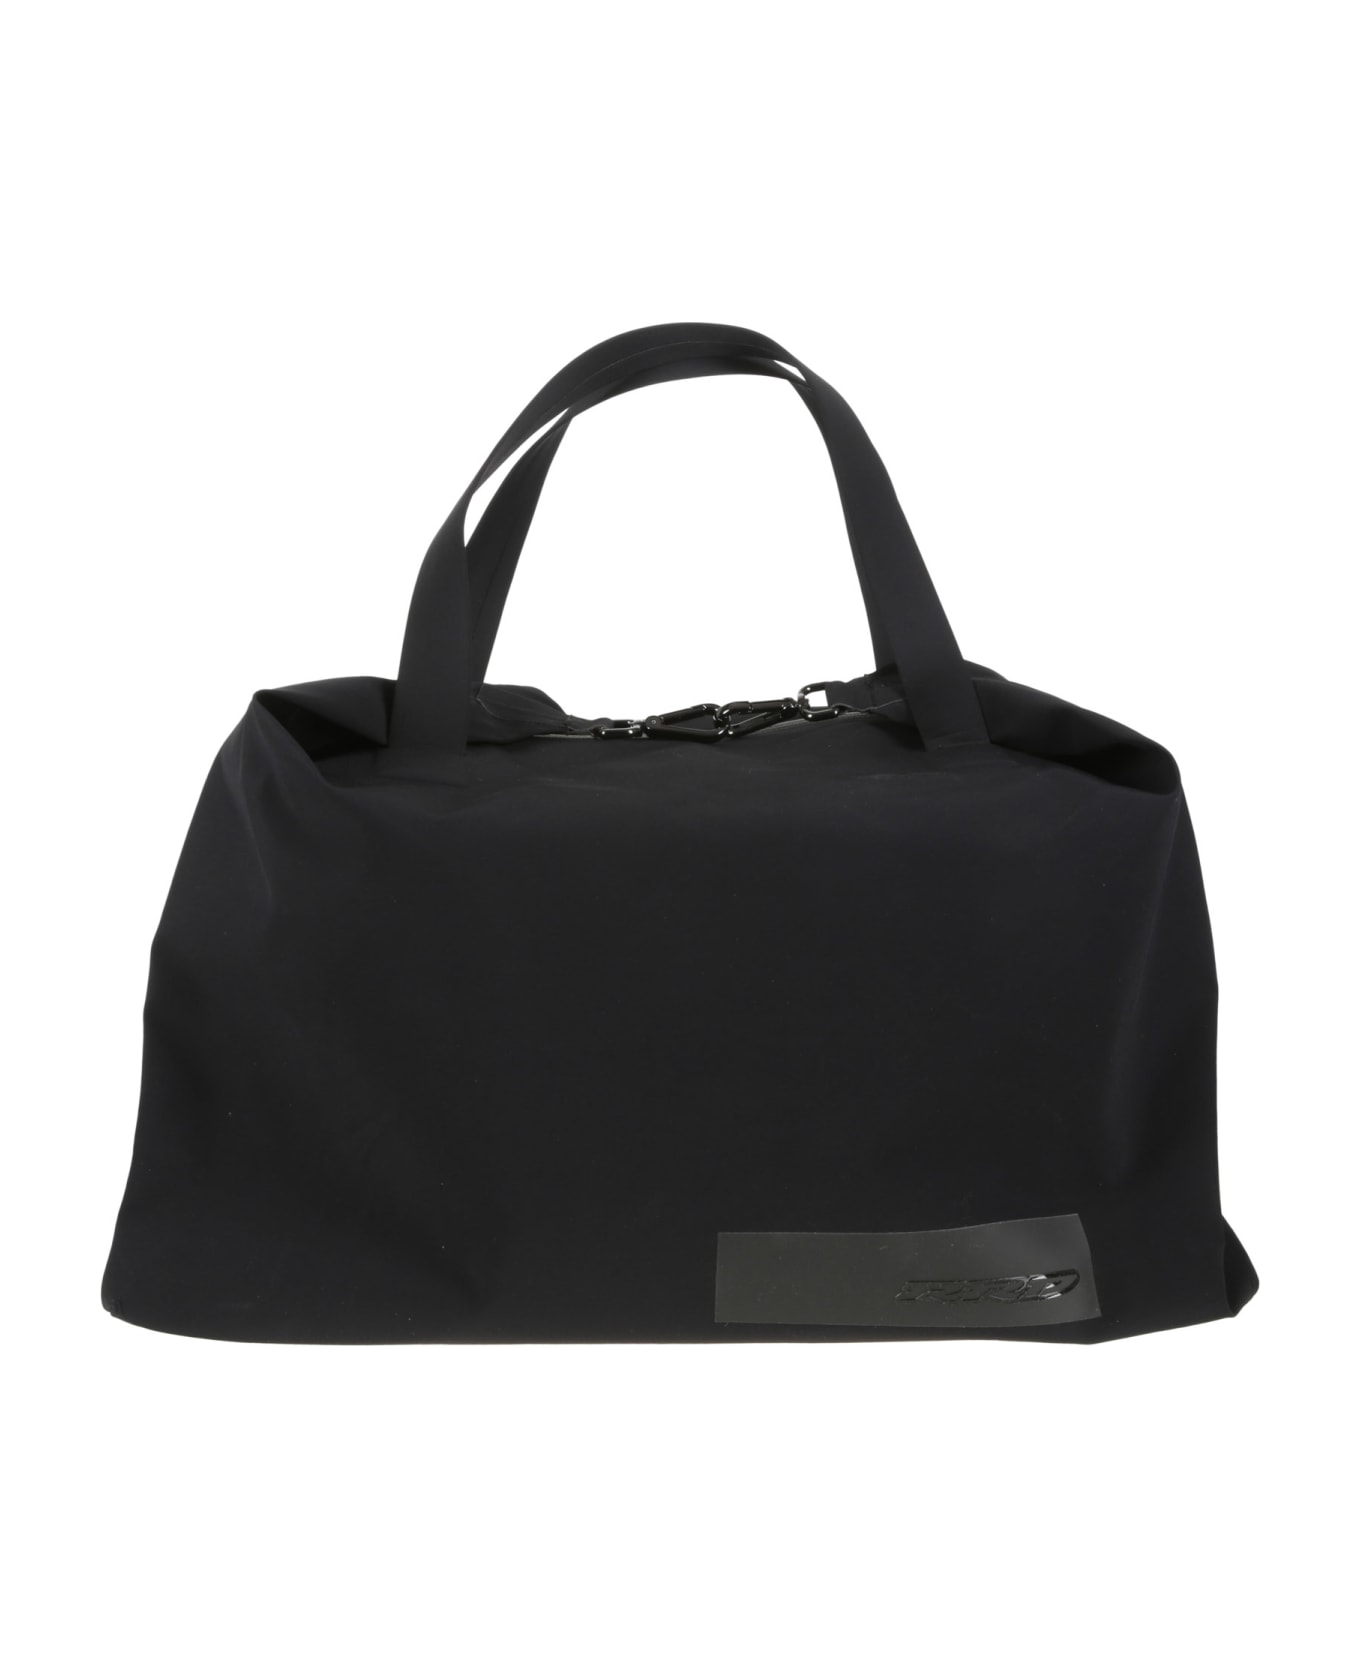 RRD - Roberto Ricci Design Techno Revo Bag - Black